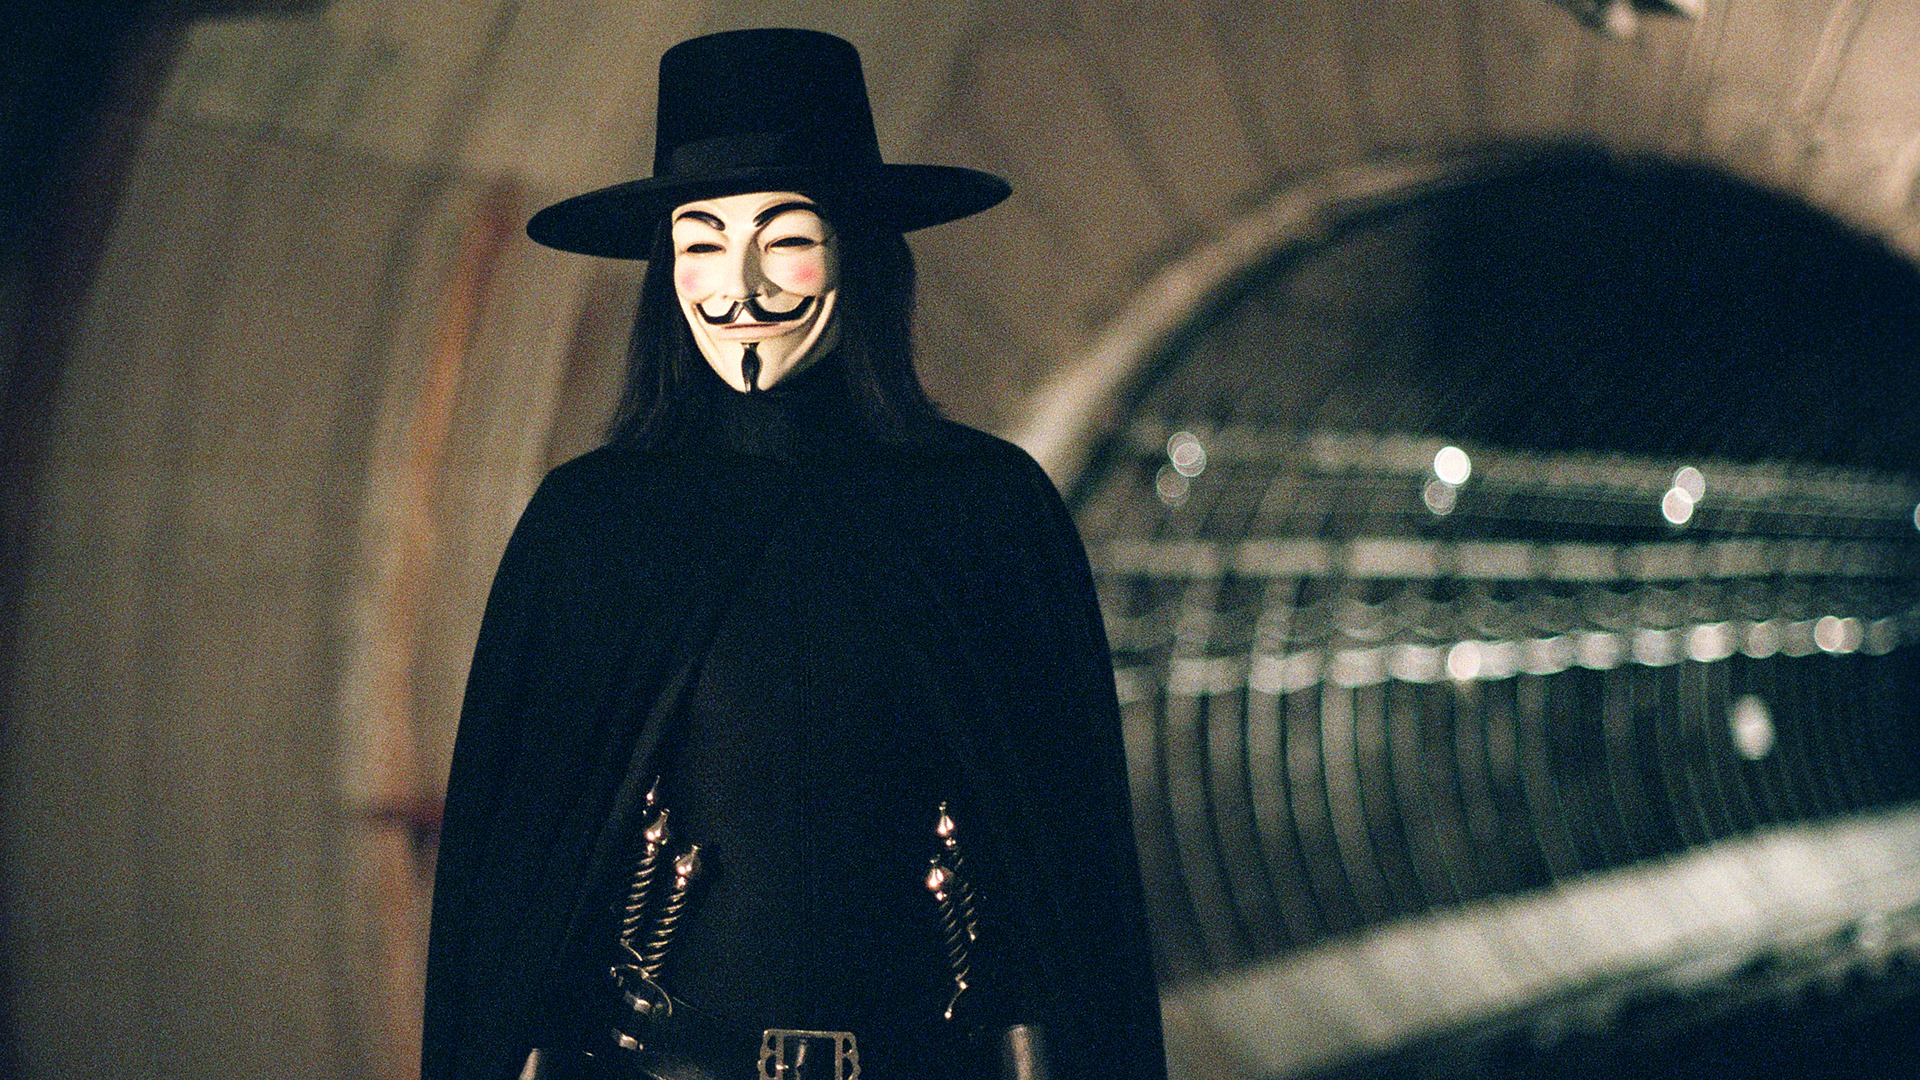 V for Vendetta (